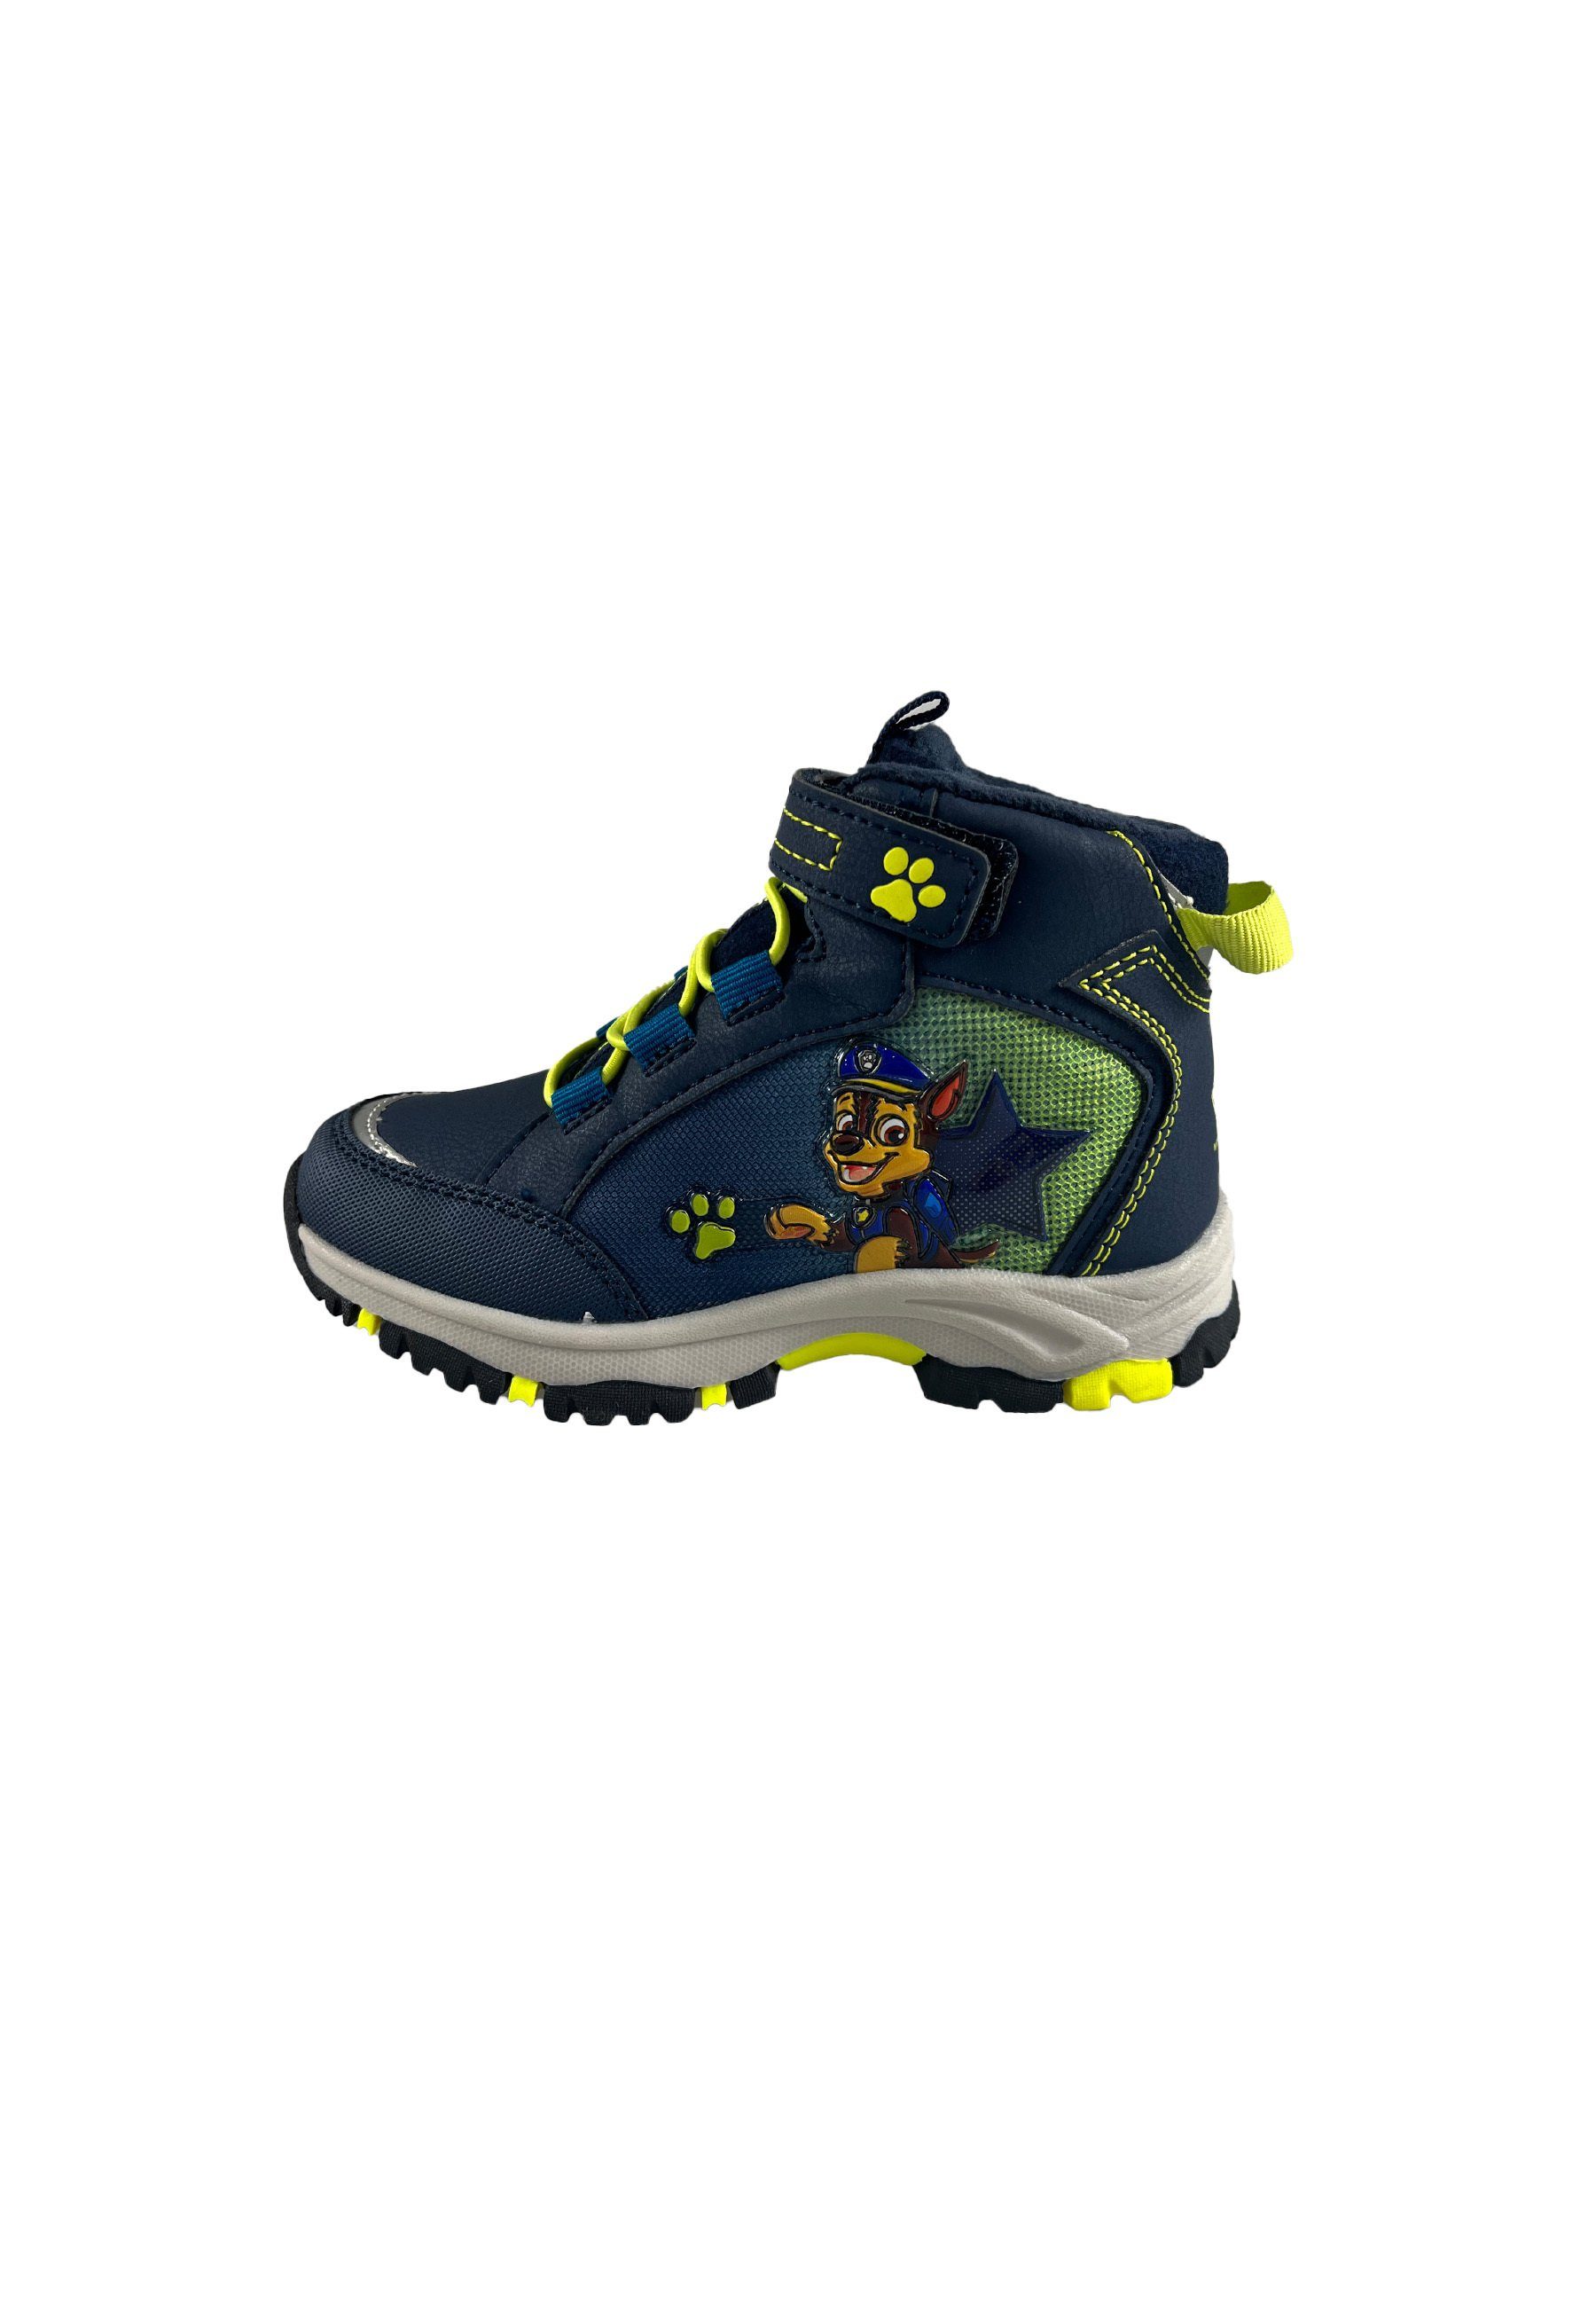 Kids2Go PawPatrol Ankleboot mit Fleece Futter und TEX-Membran Stiefel Mit Klettverschluss. Vegan. Warm gefüttert. Lasche an der Ferse.